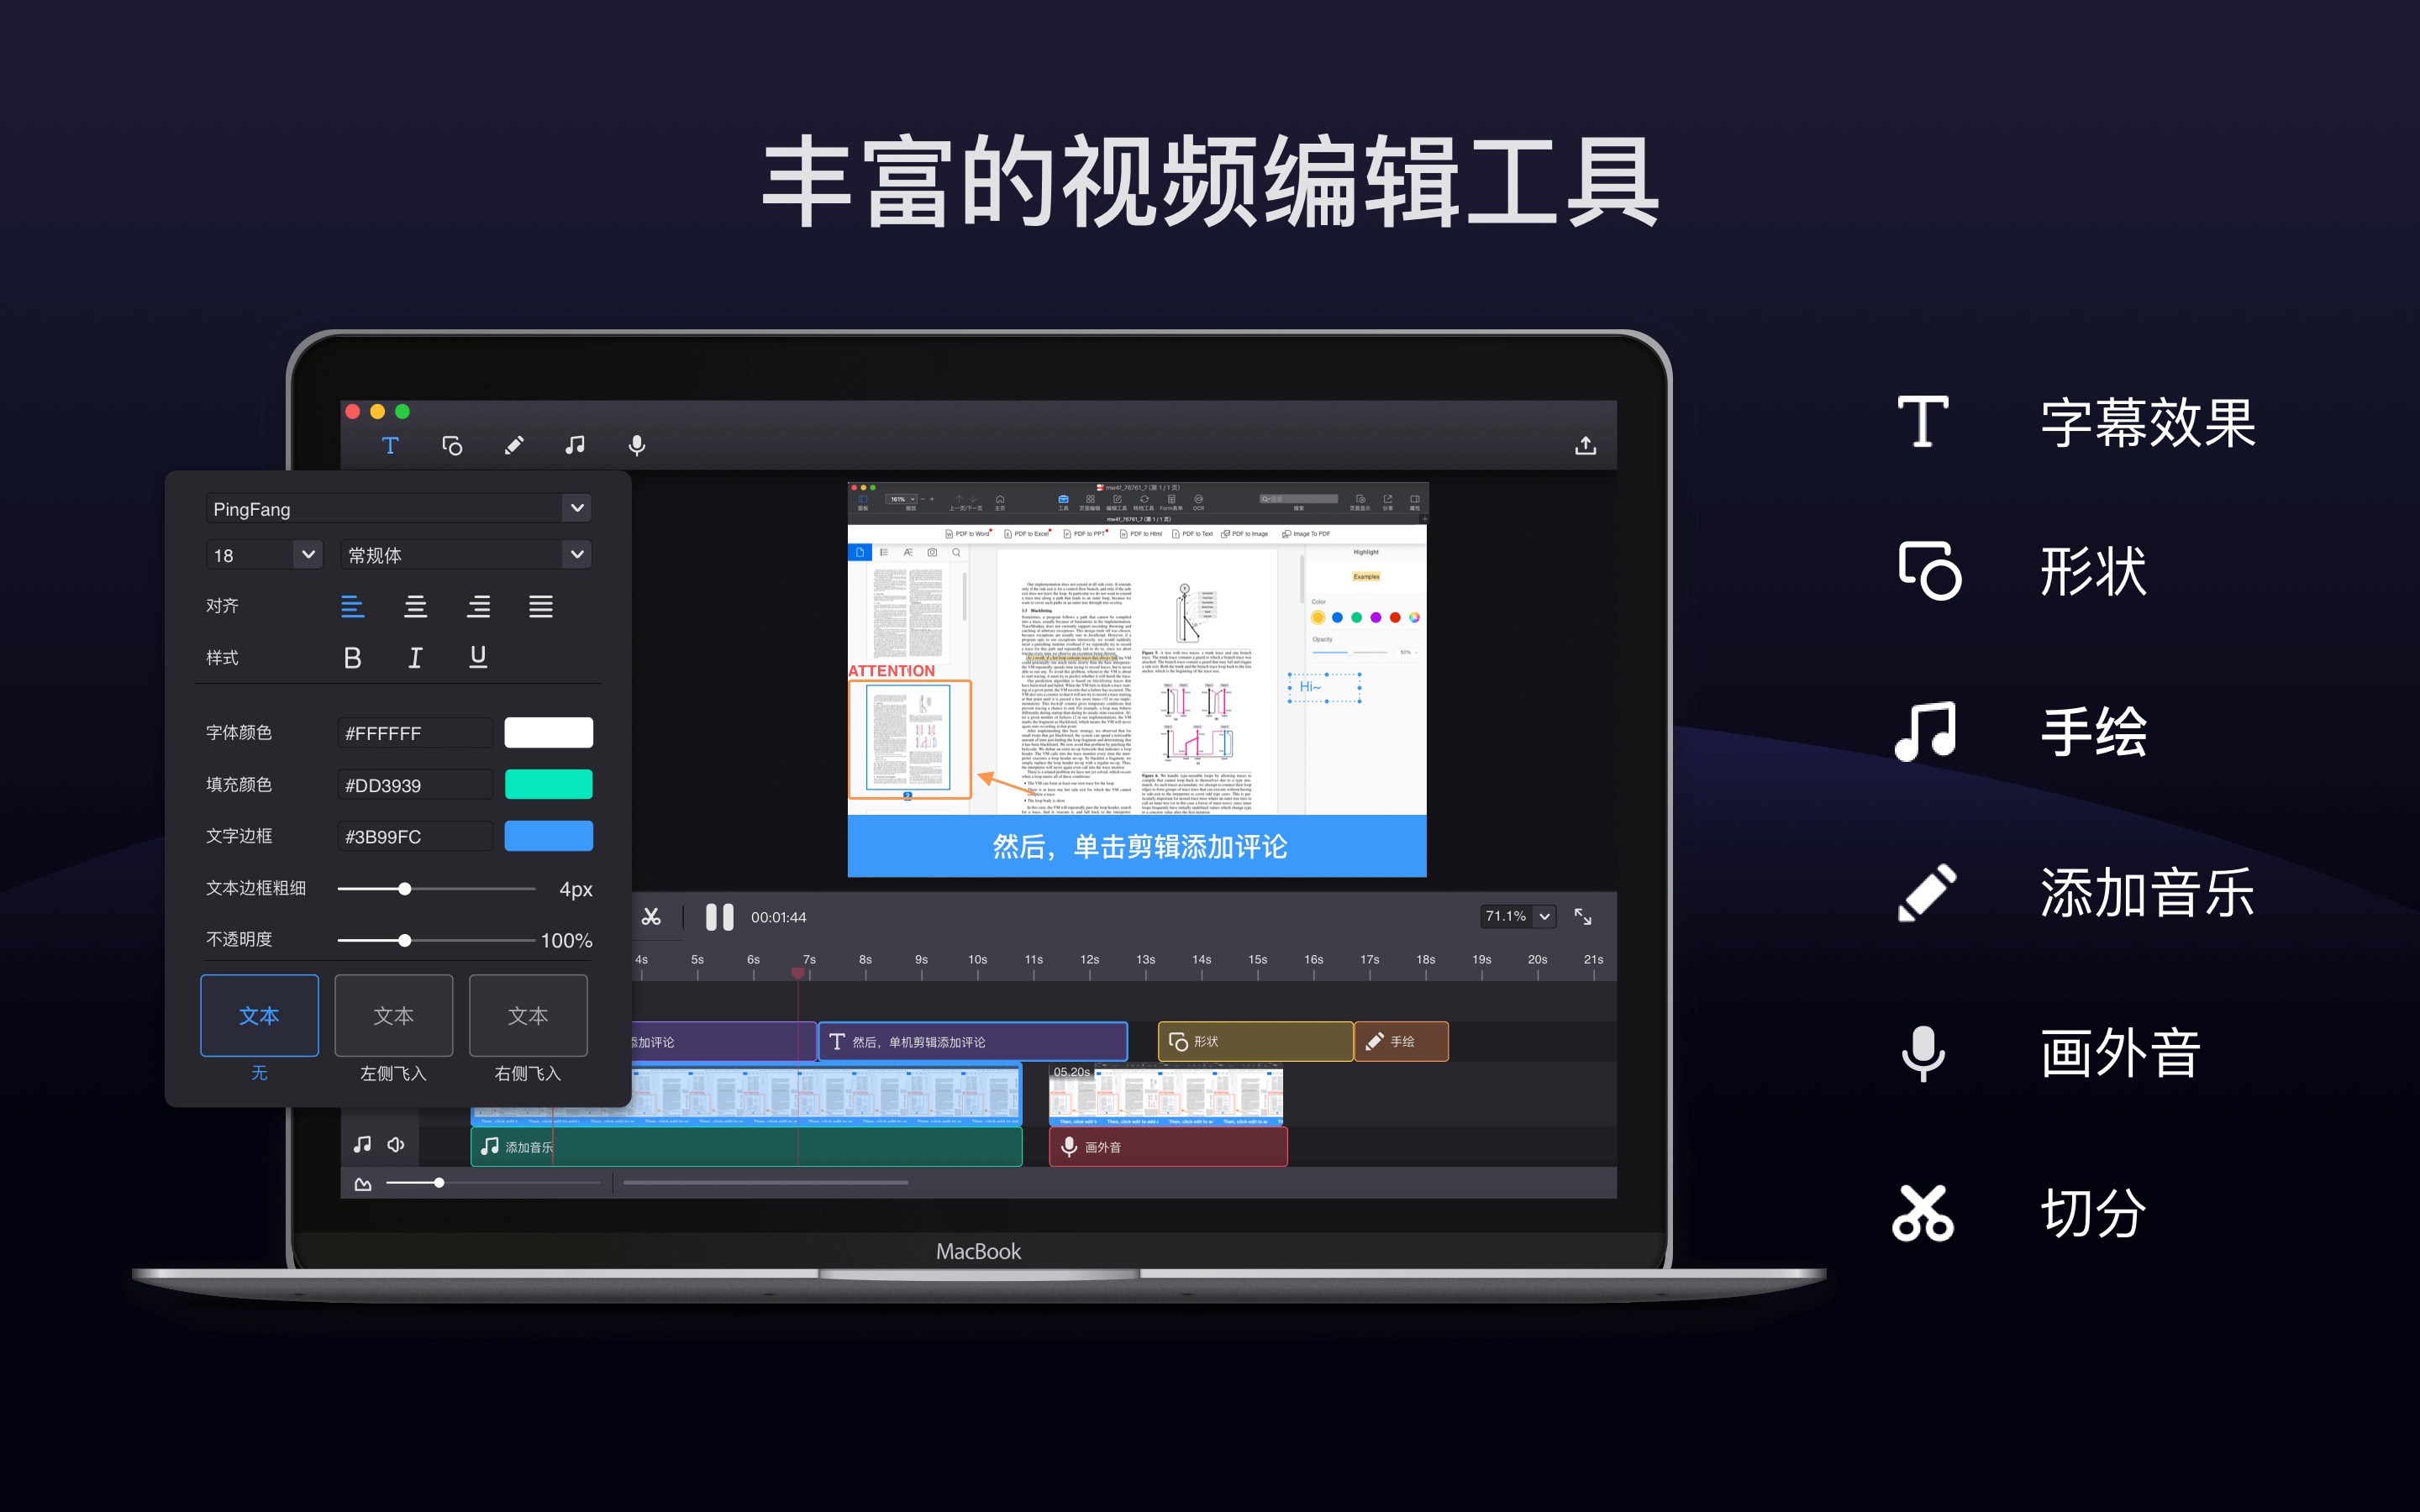 Filmage Screen Pro 1.4.3 Mac录屏和视频编辑器 - 马可菠萝.jpg